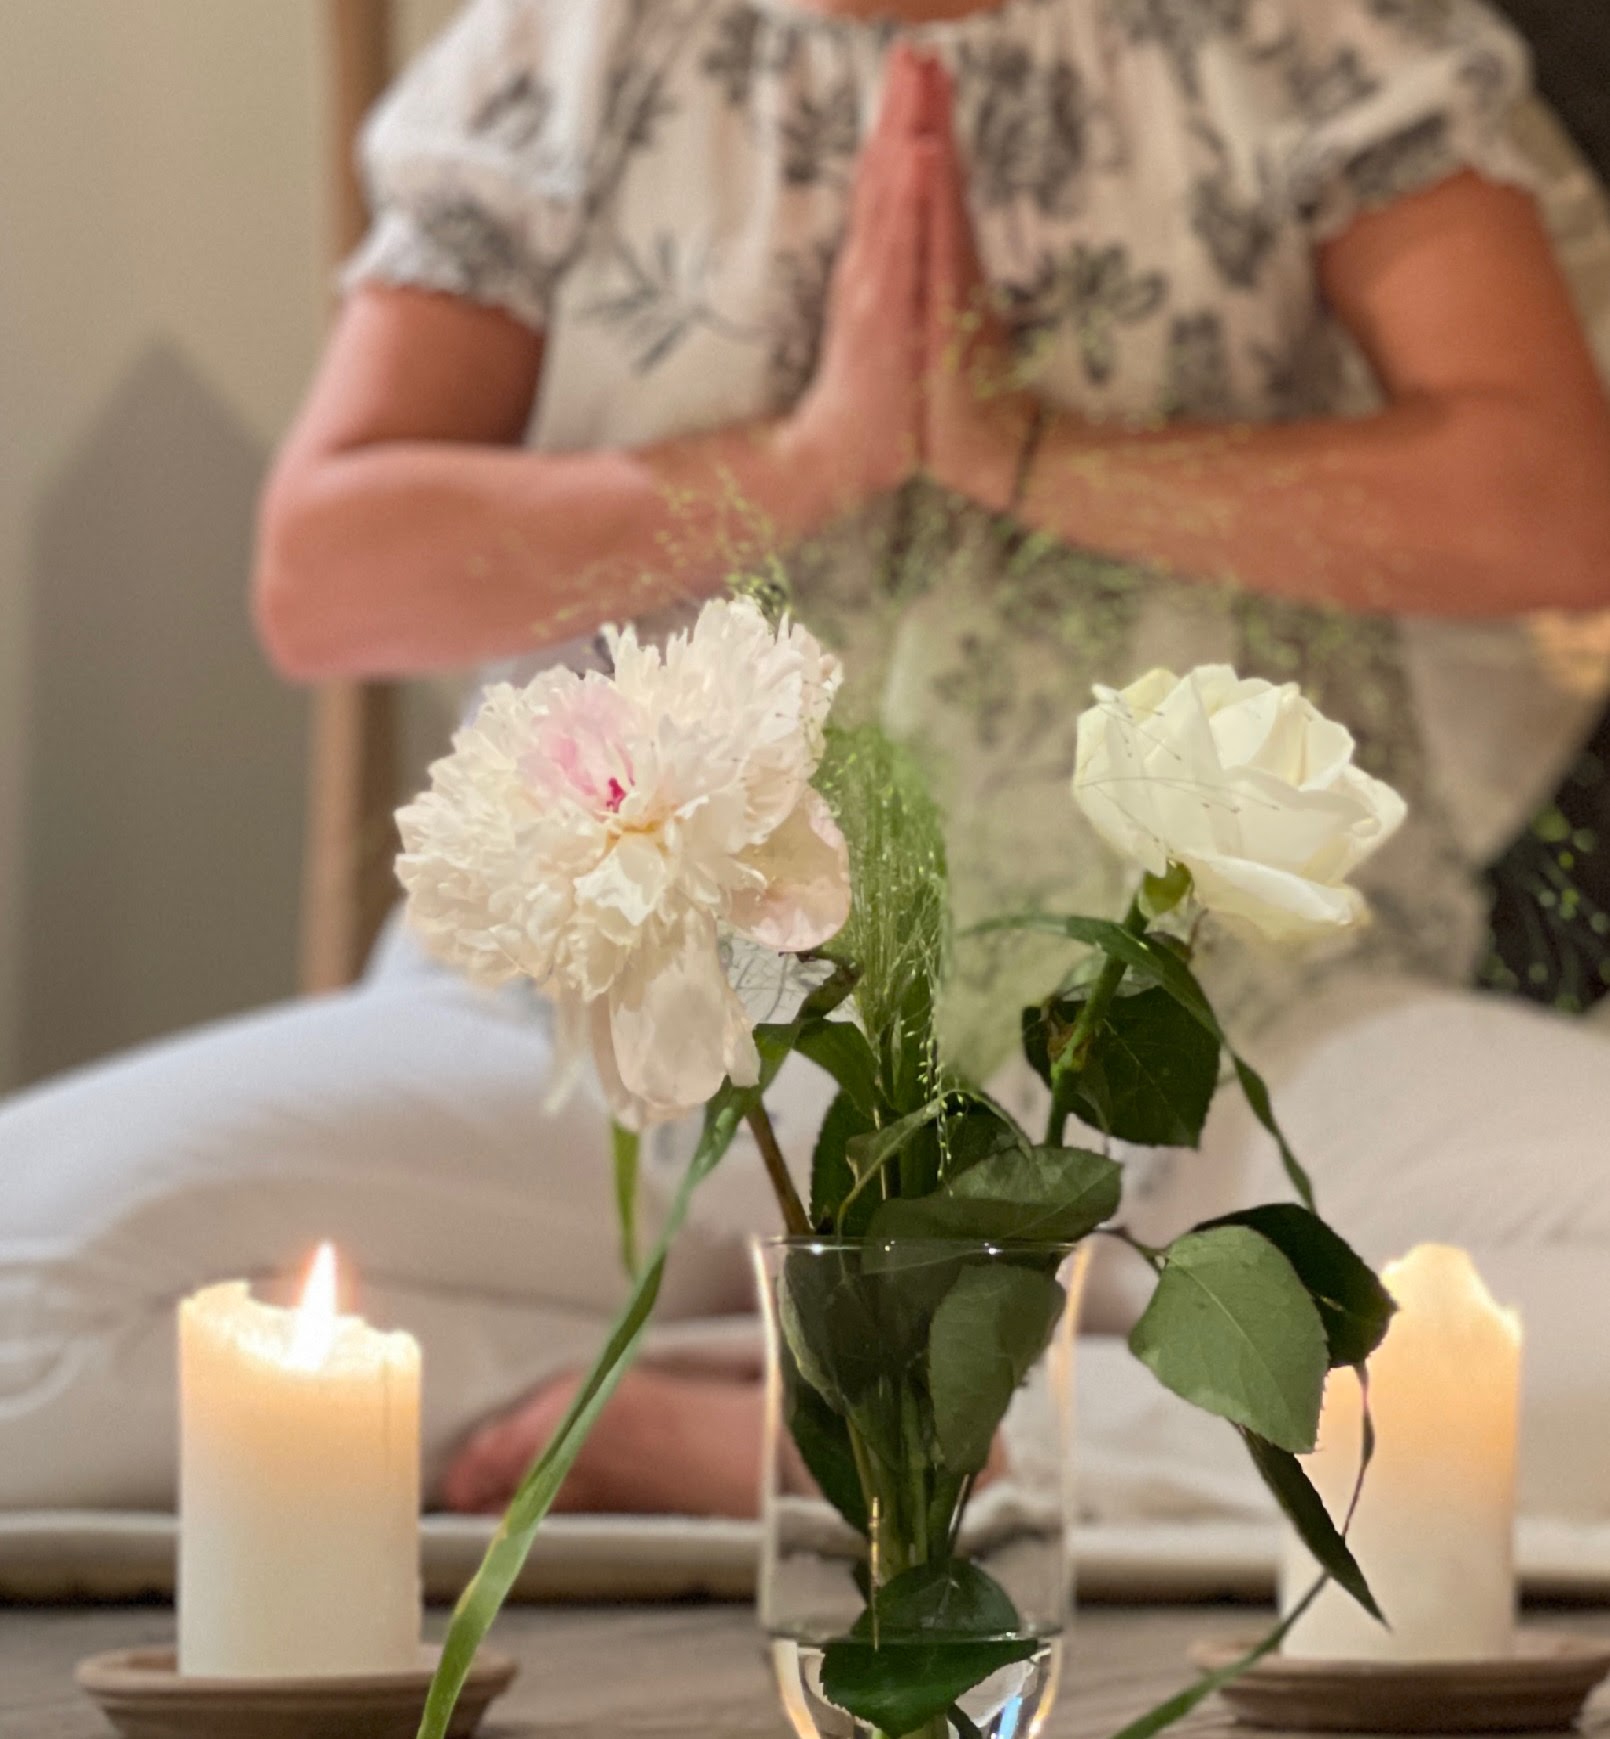 Två tända ljus och blommor framför en yogande kvinna